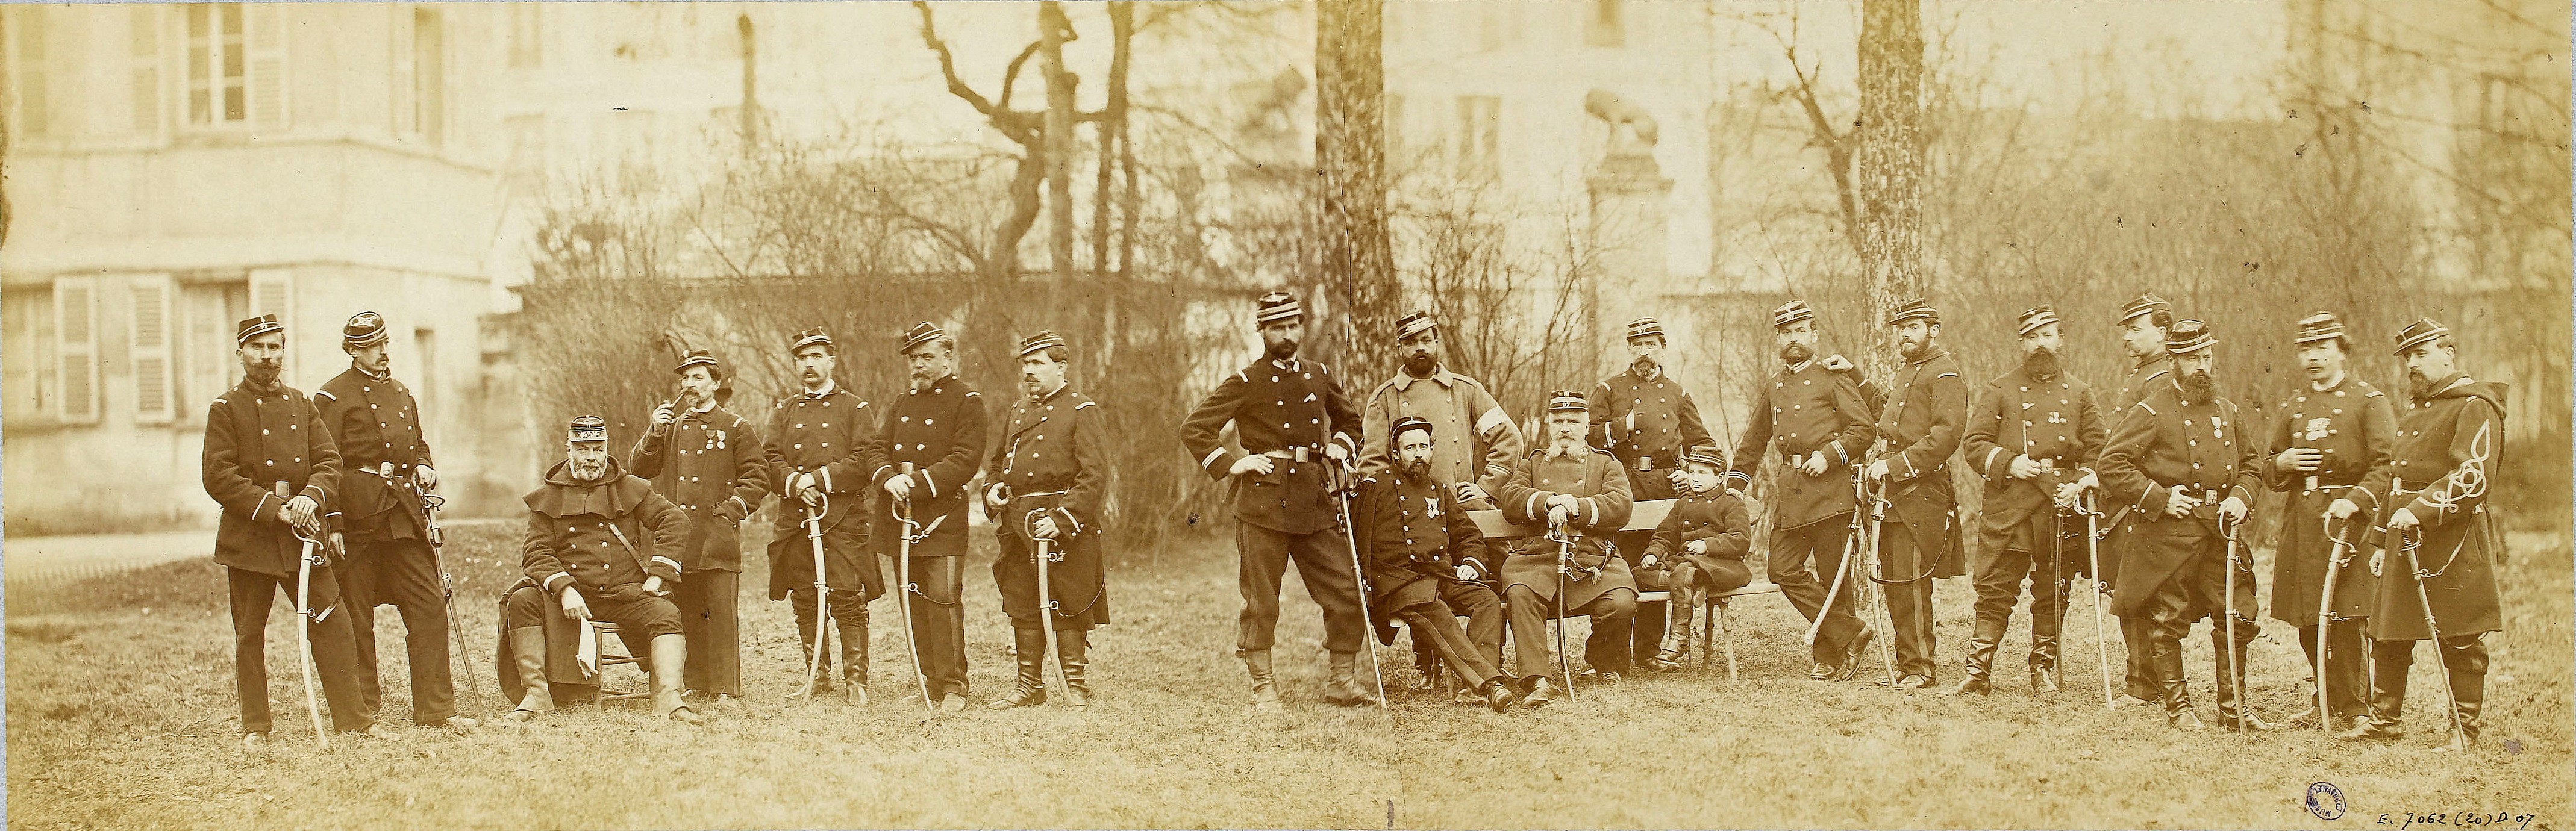 Défense de Paris 1870-1871 : Garde nationale 97e Bataillon, Commandant Gaudet - Photographie André-Adolphe-Eugène Disdéri - 1871 (source : © Musée Carnavalet – Histoire de Paris)